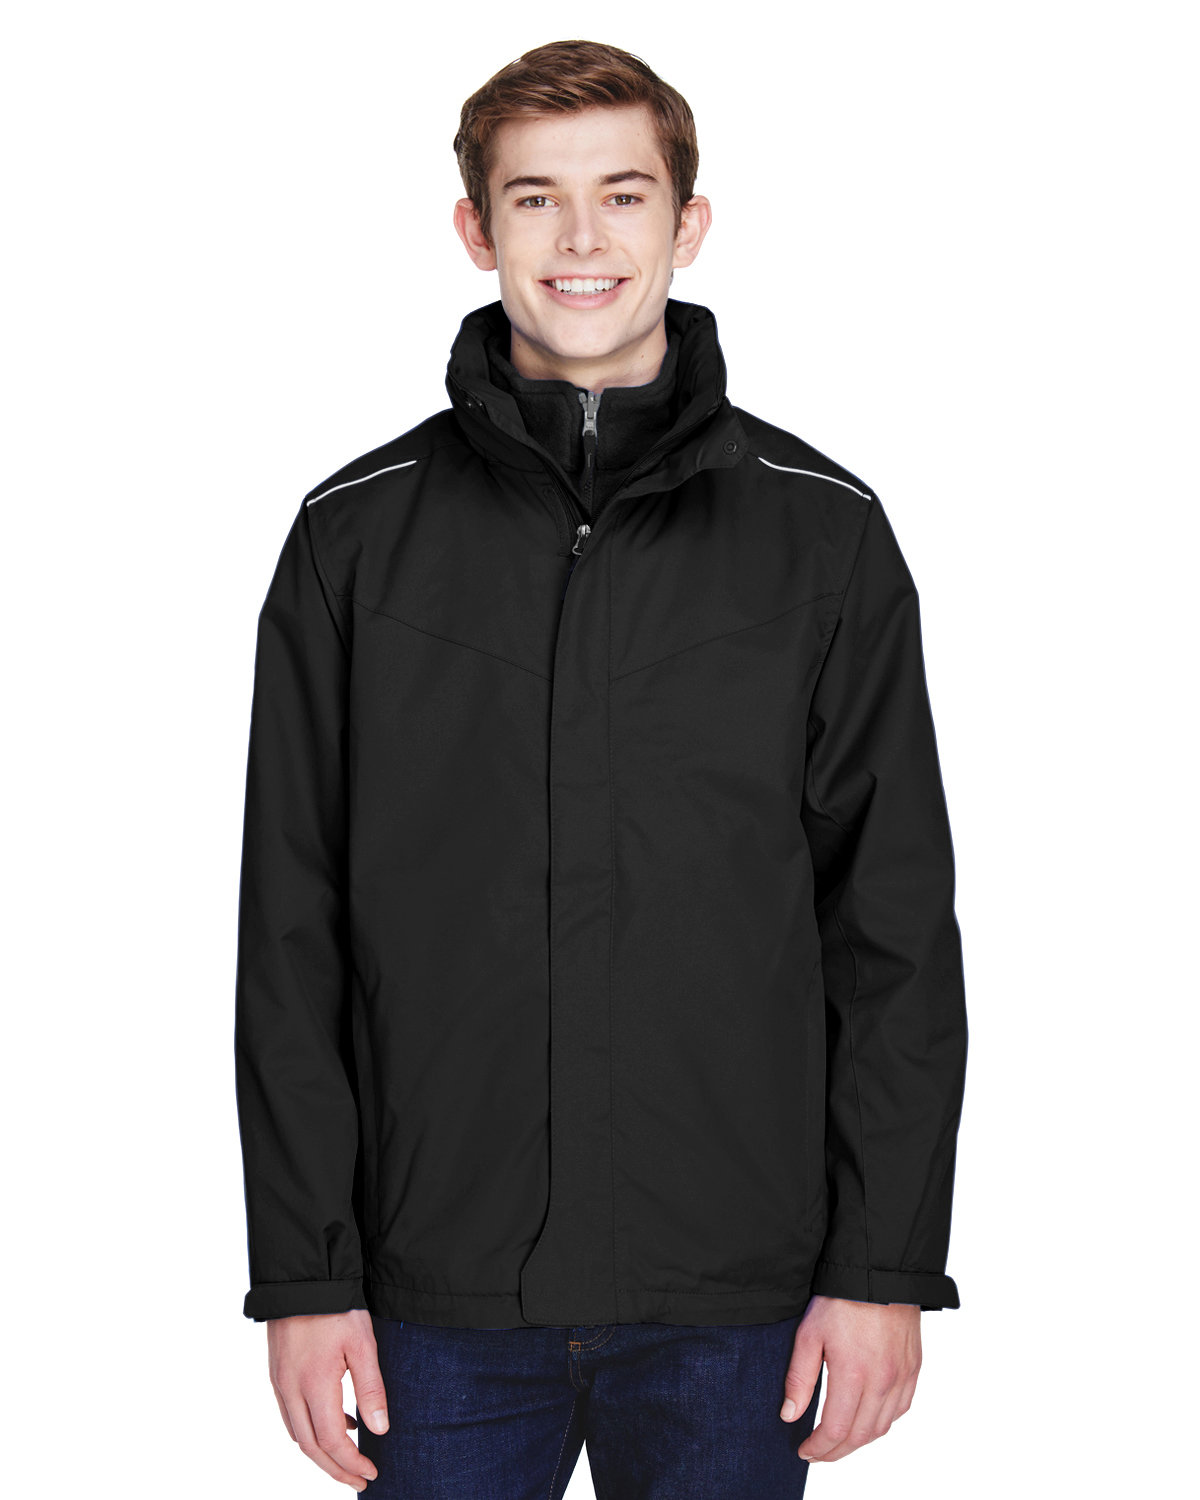 Core 365 88205 - Men's Region 3-in-1 Jacket with Fleece Liner